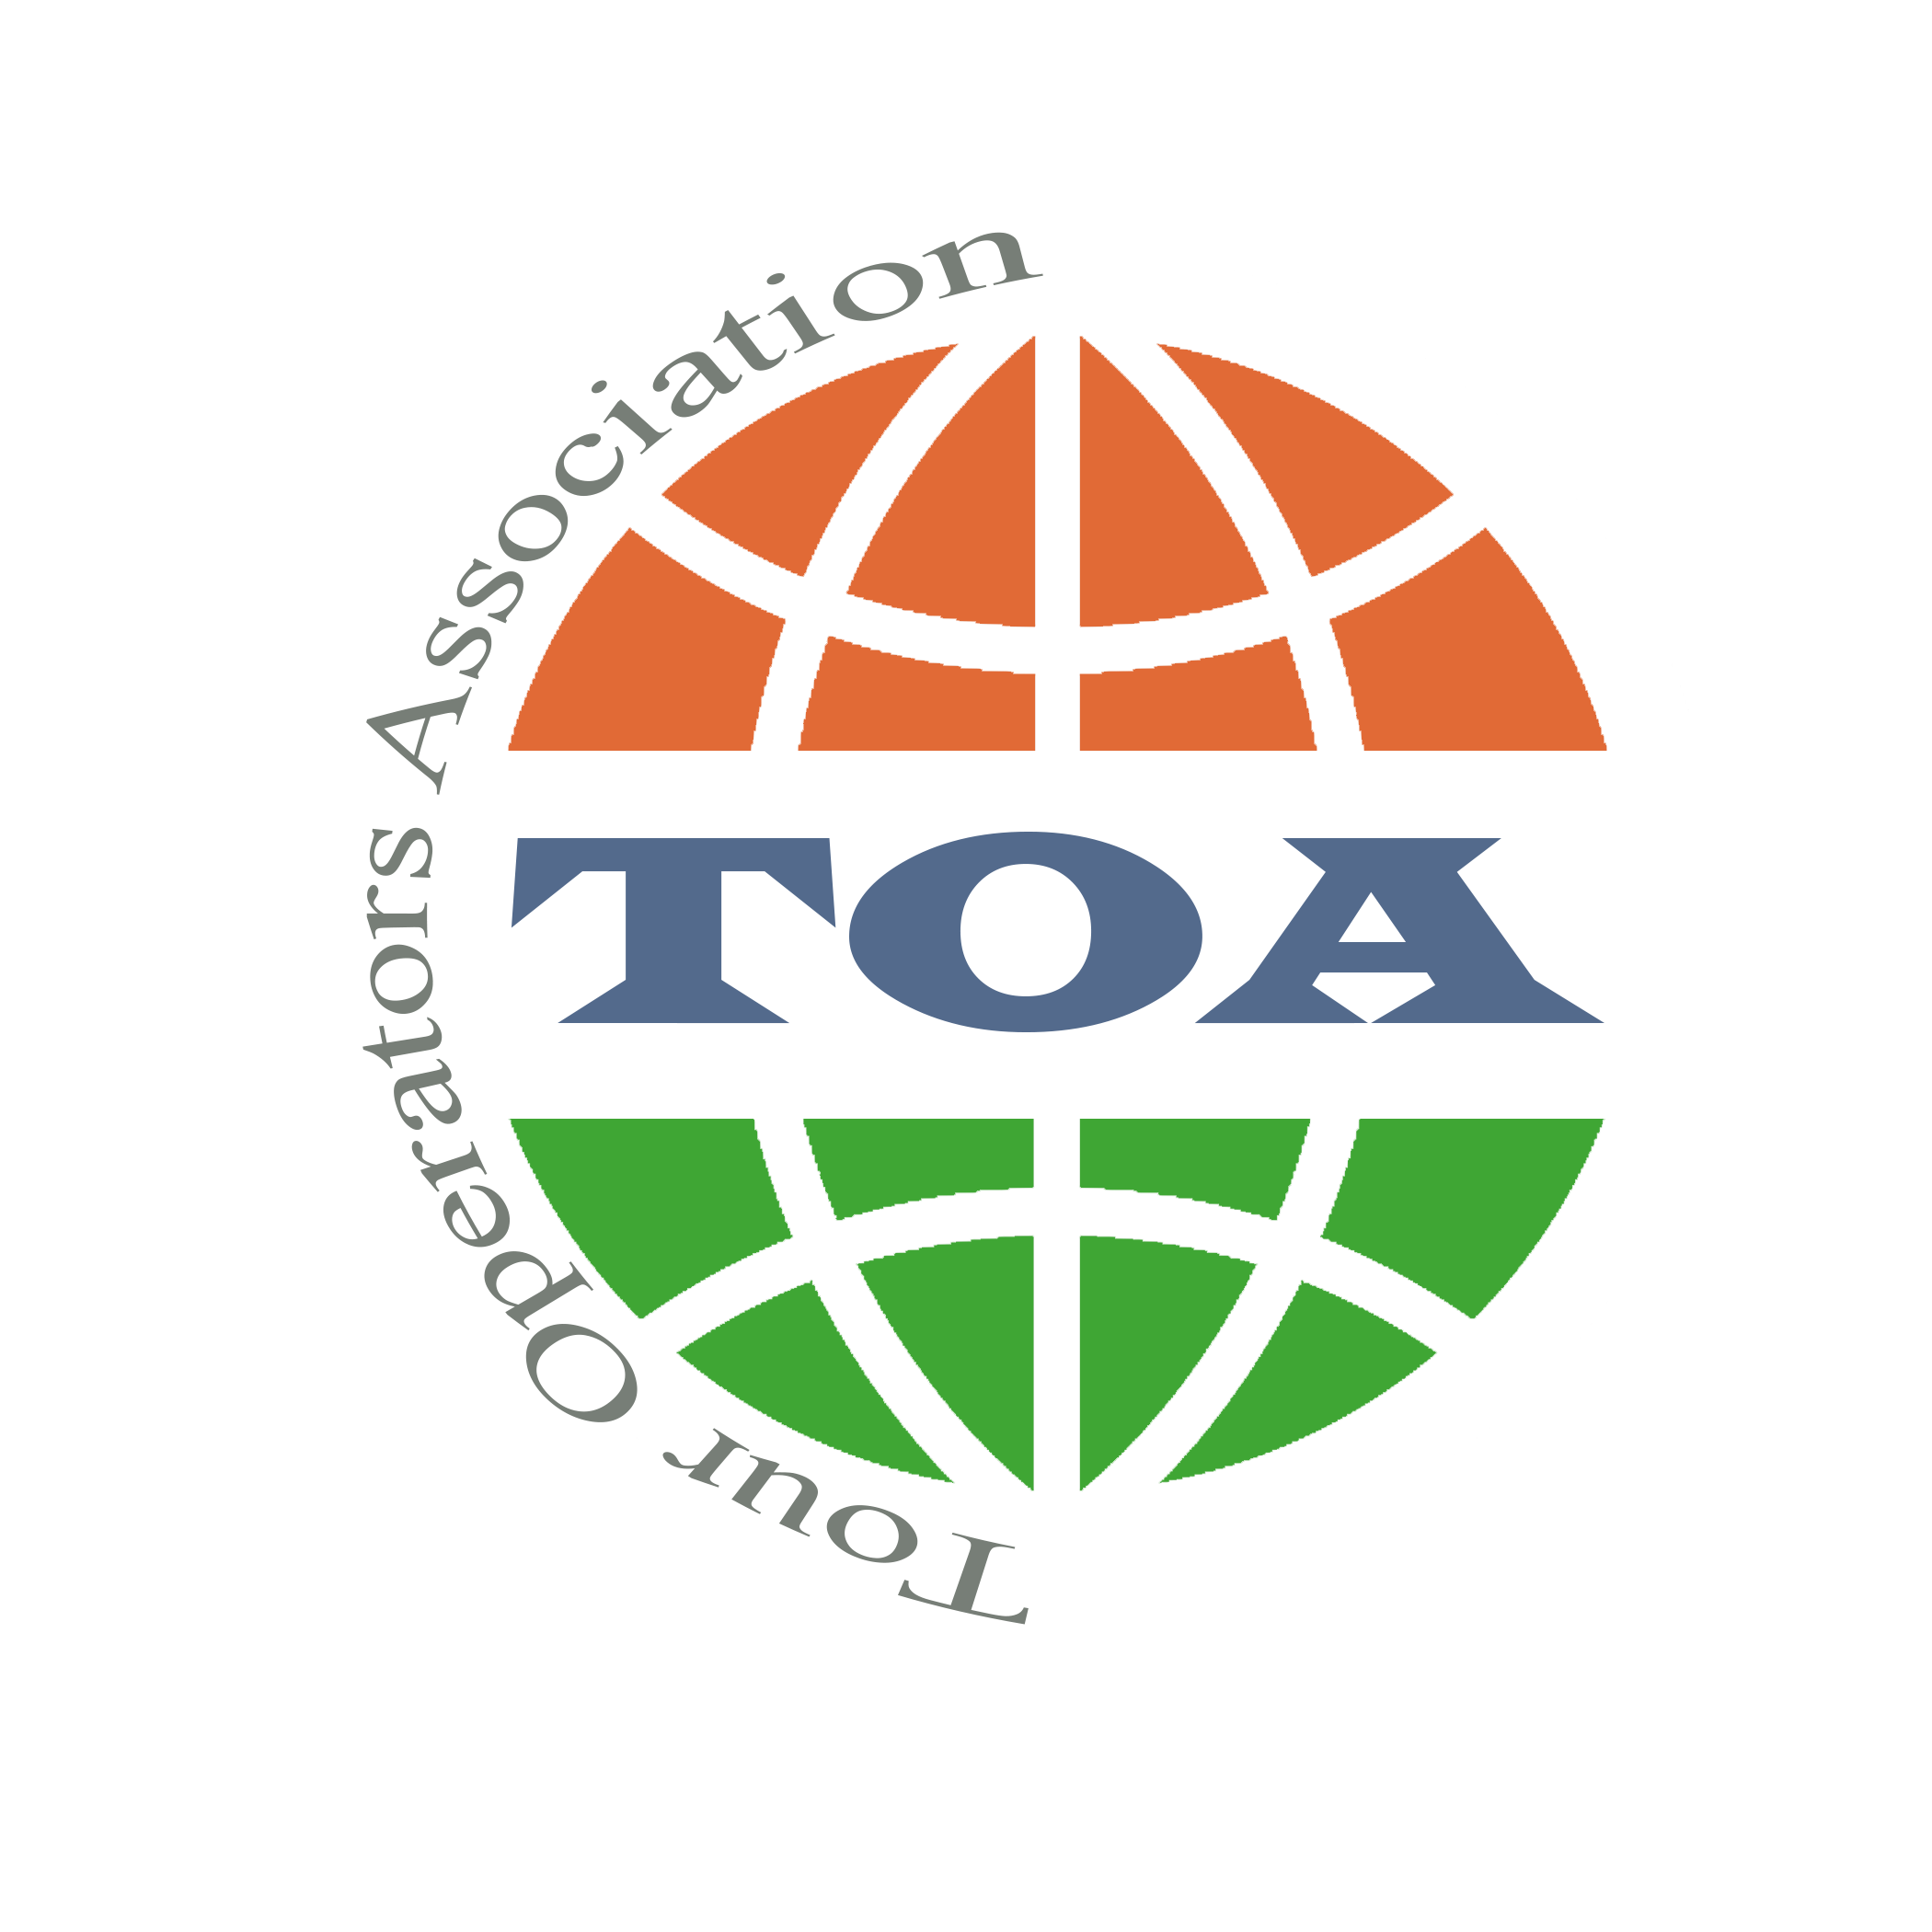 zimbabwe tour operators association